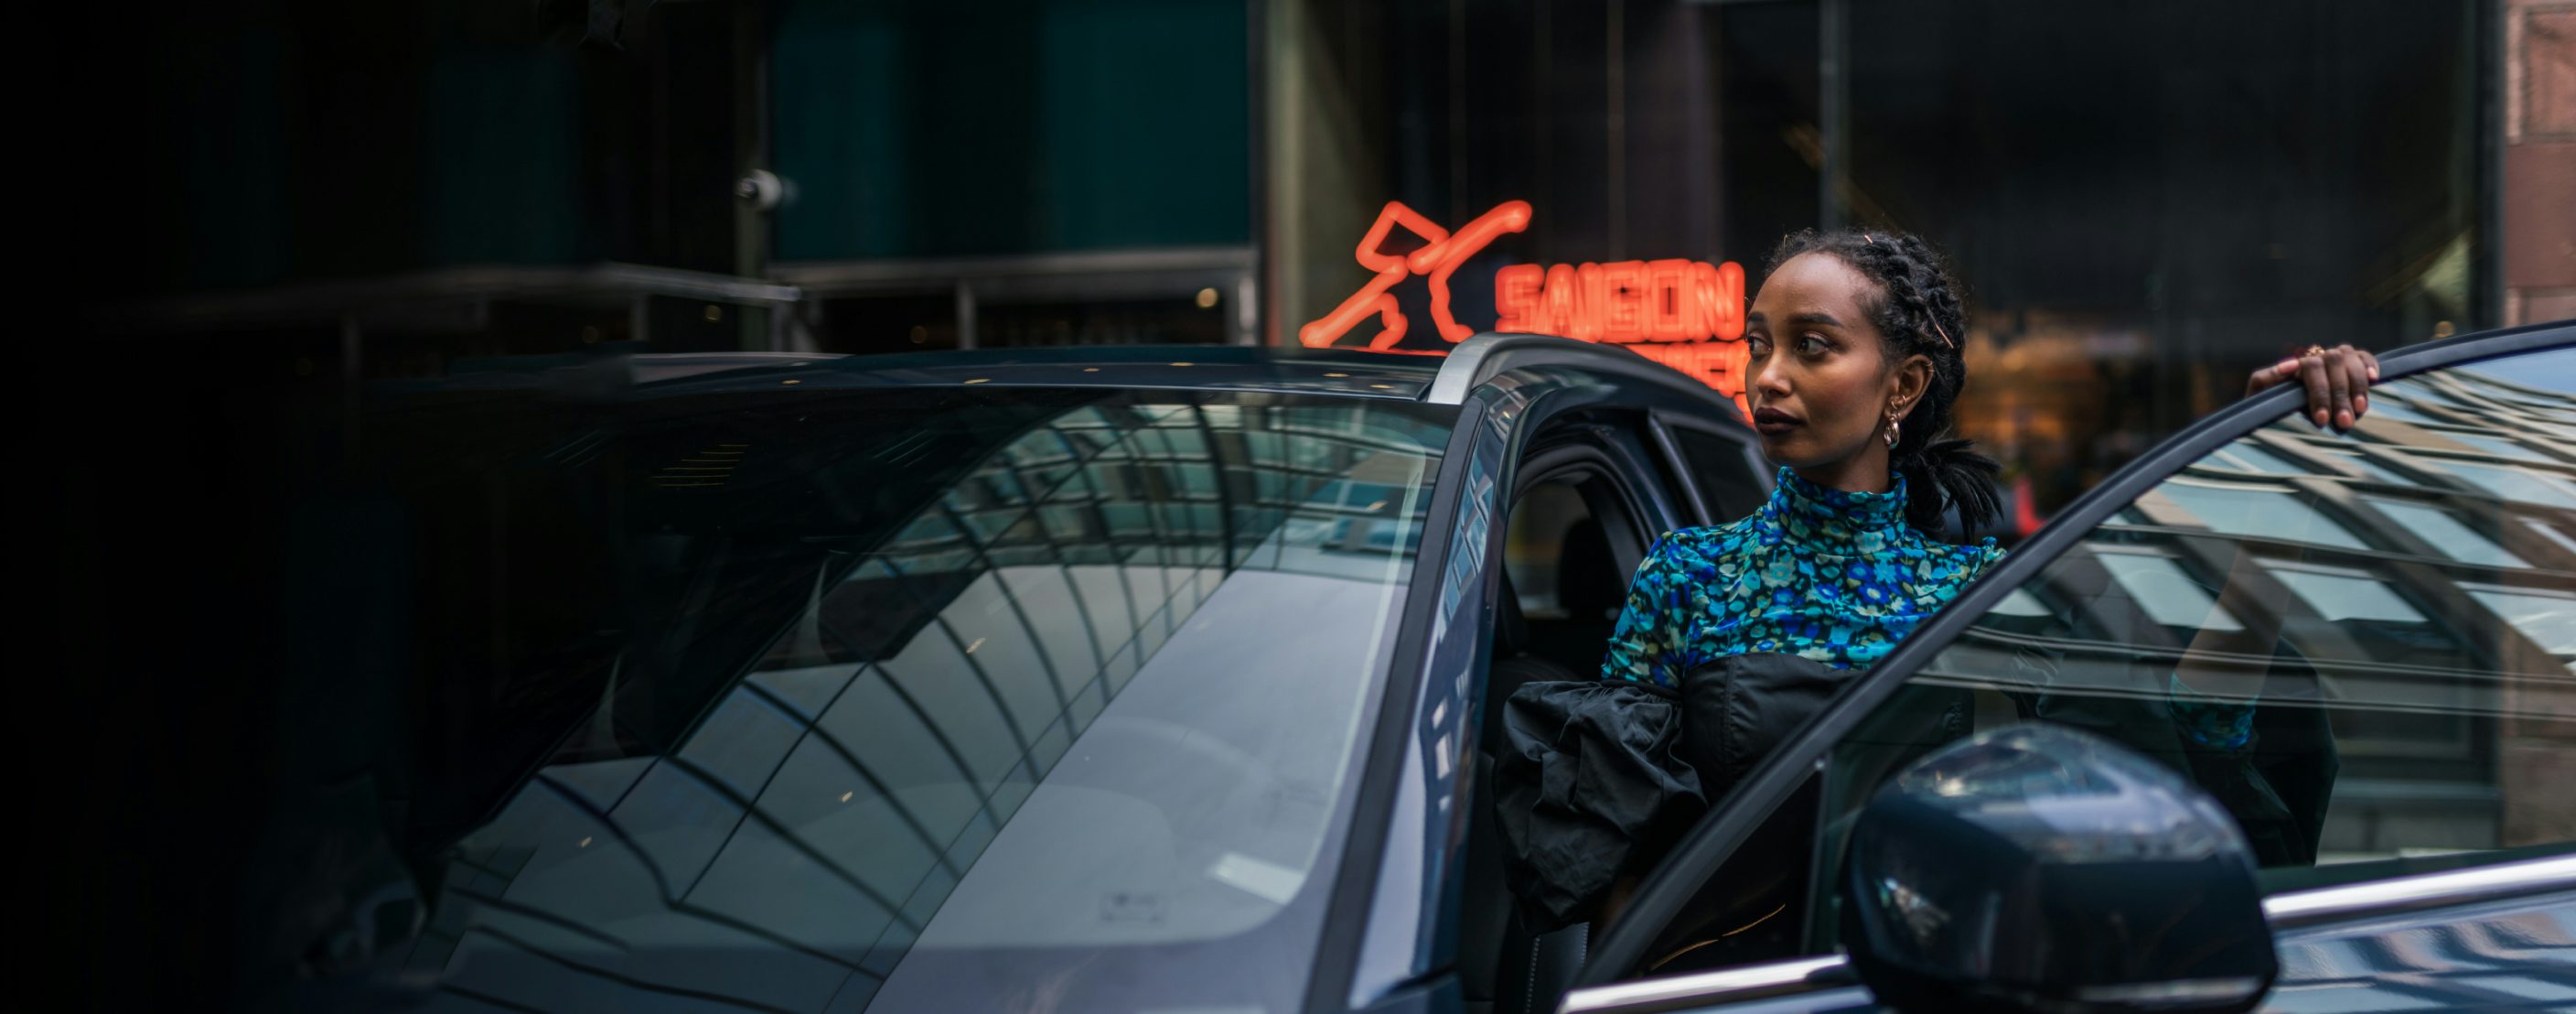 Affärsklädd kvinna på väg att sätta sig i en Volvo parkerad i ett affärsdistrikt